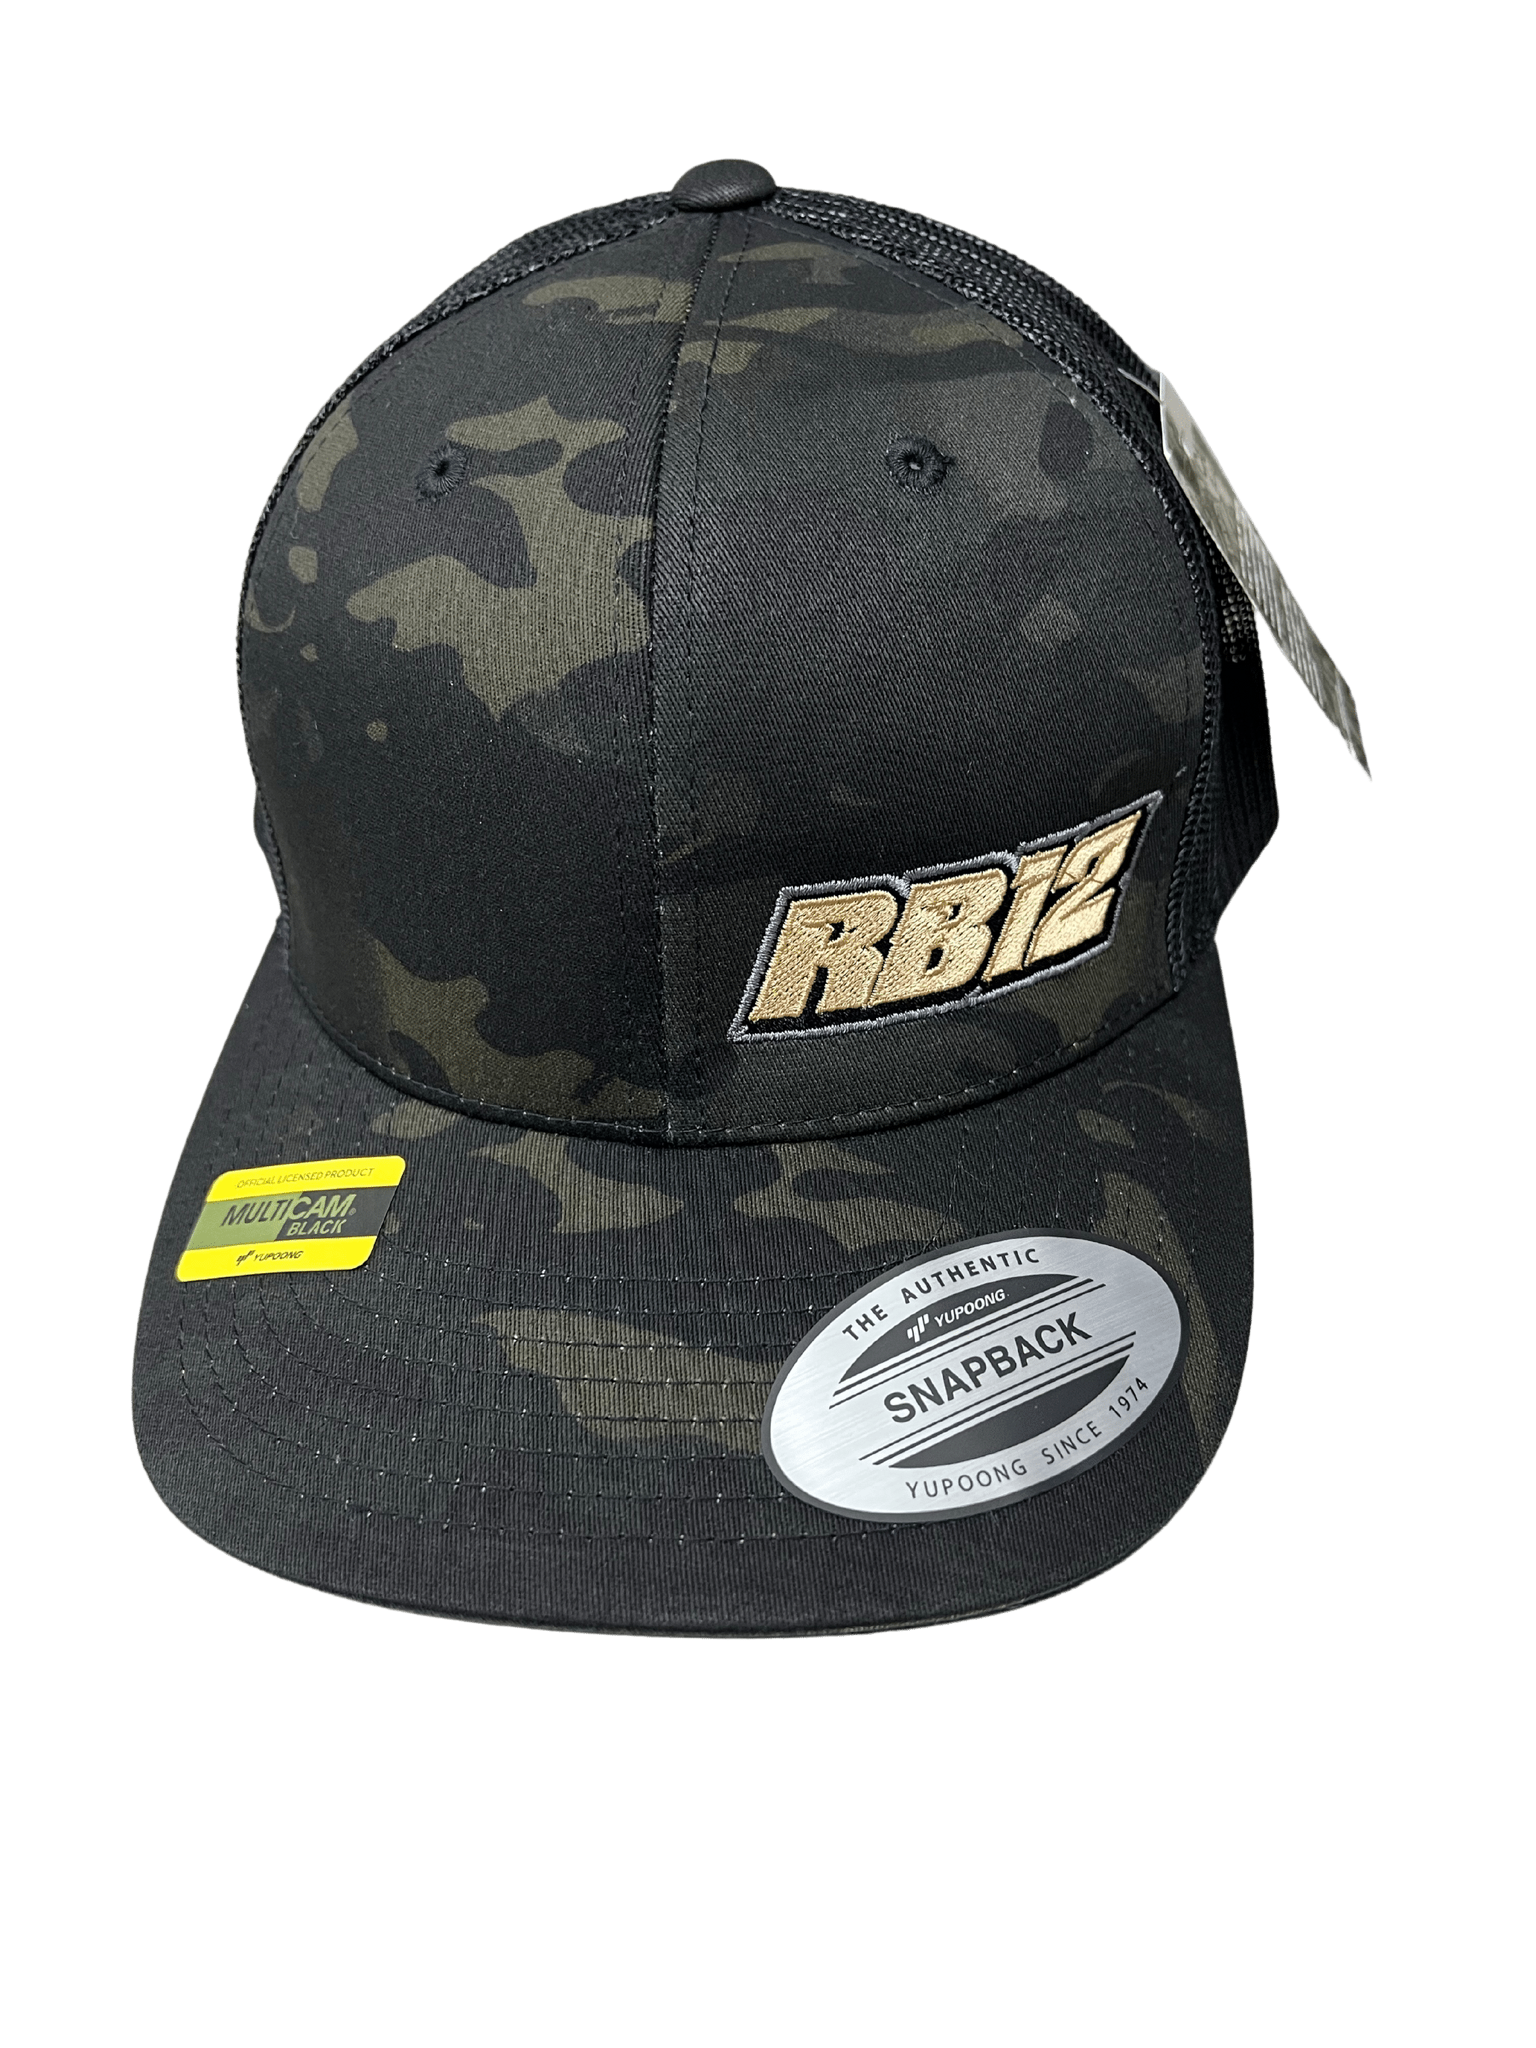 Camo RB #12 Trucker Hat